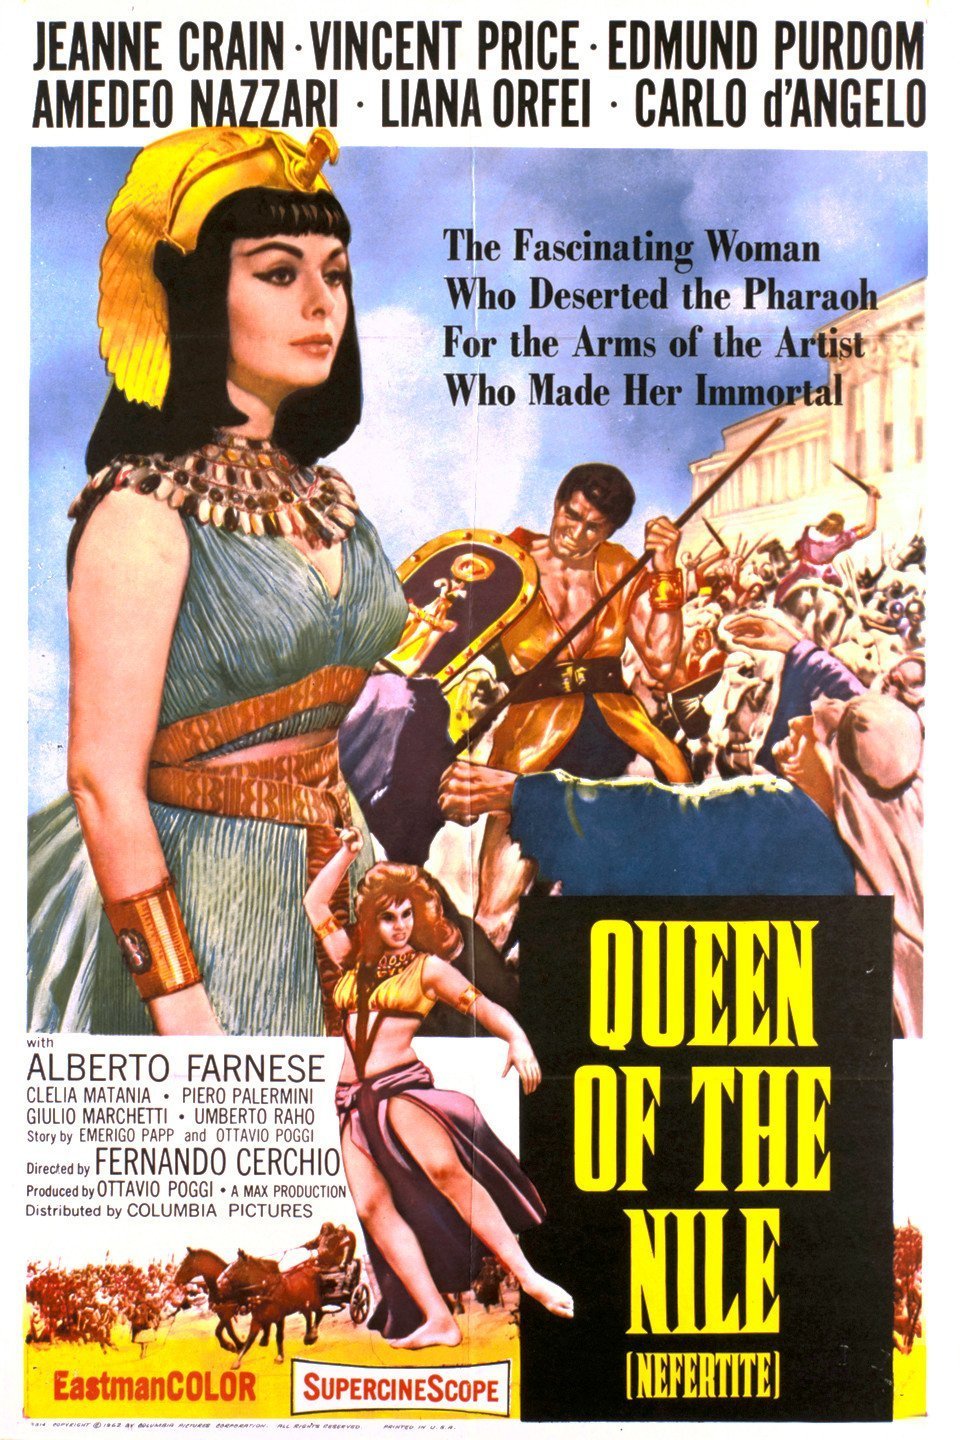 Italian poster of the movie Nefertite, regina del Nilo